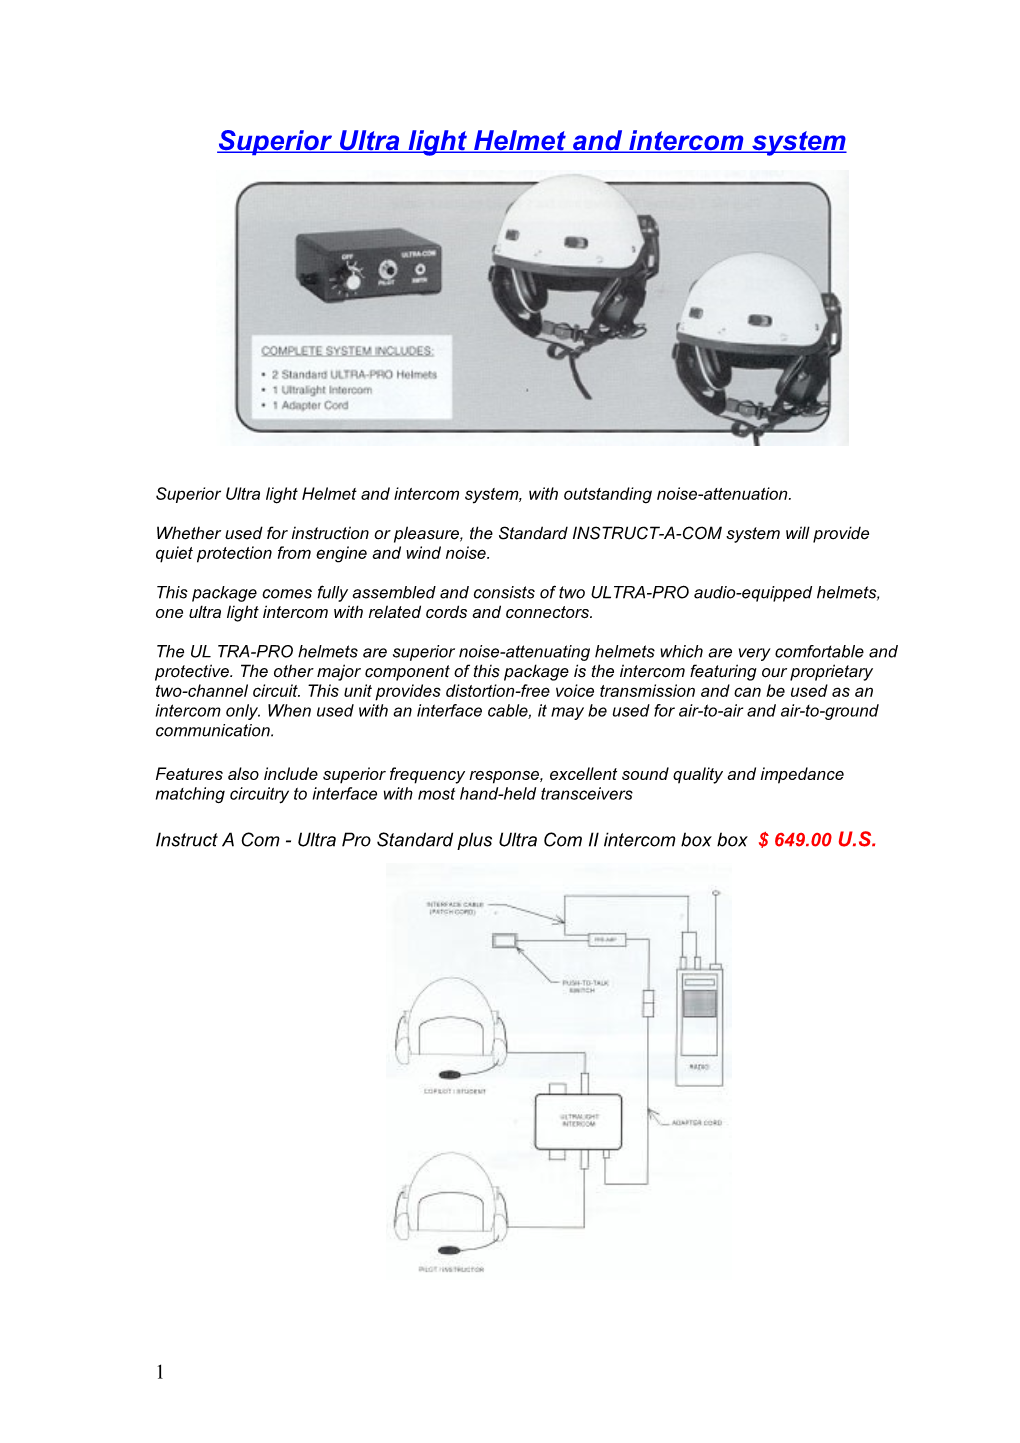 Superior Ultra Light Helmet and Intercom System